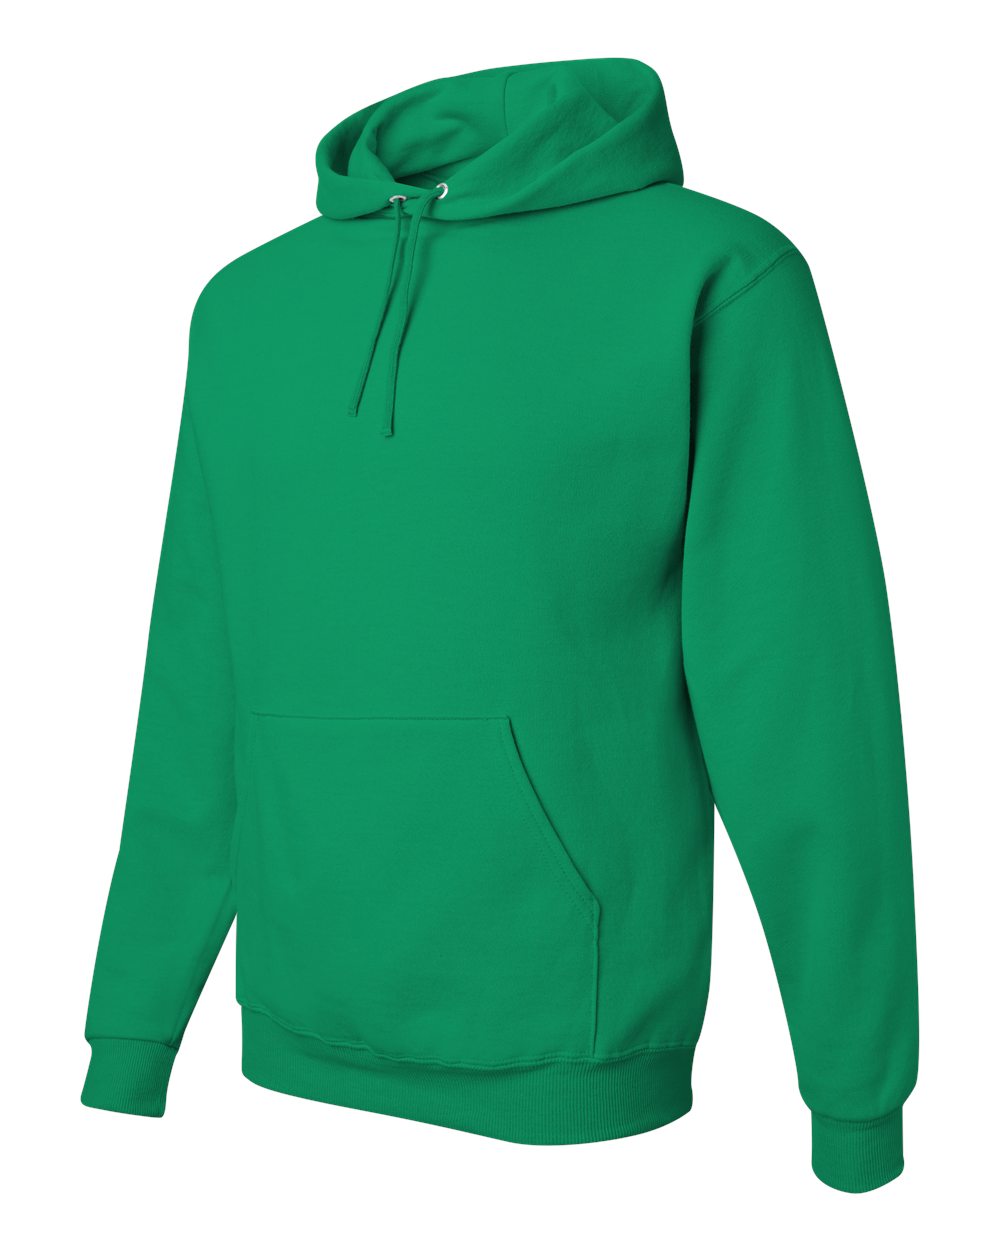 JERZEES NuBlend® Hooded Sweatshirt 996MR #color_Kelly